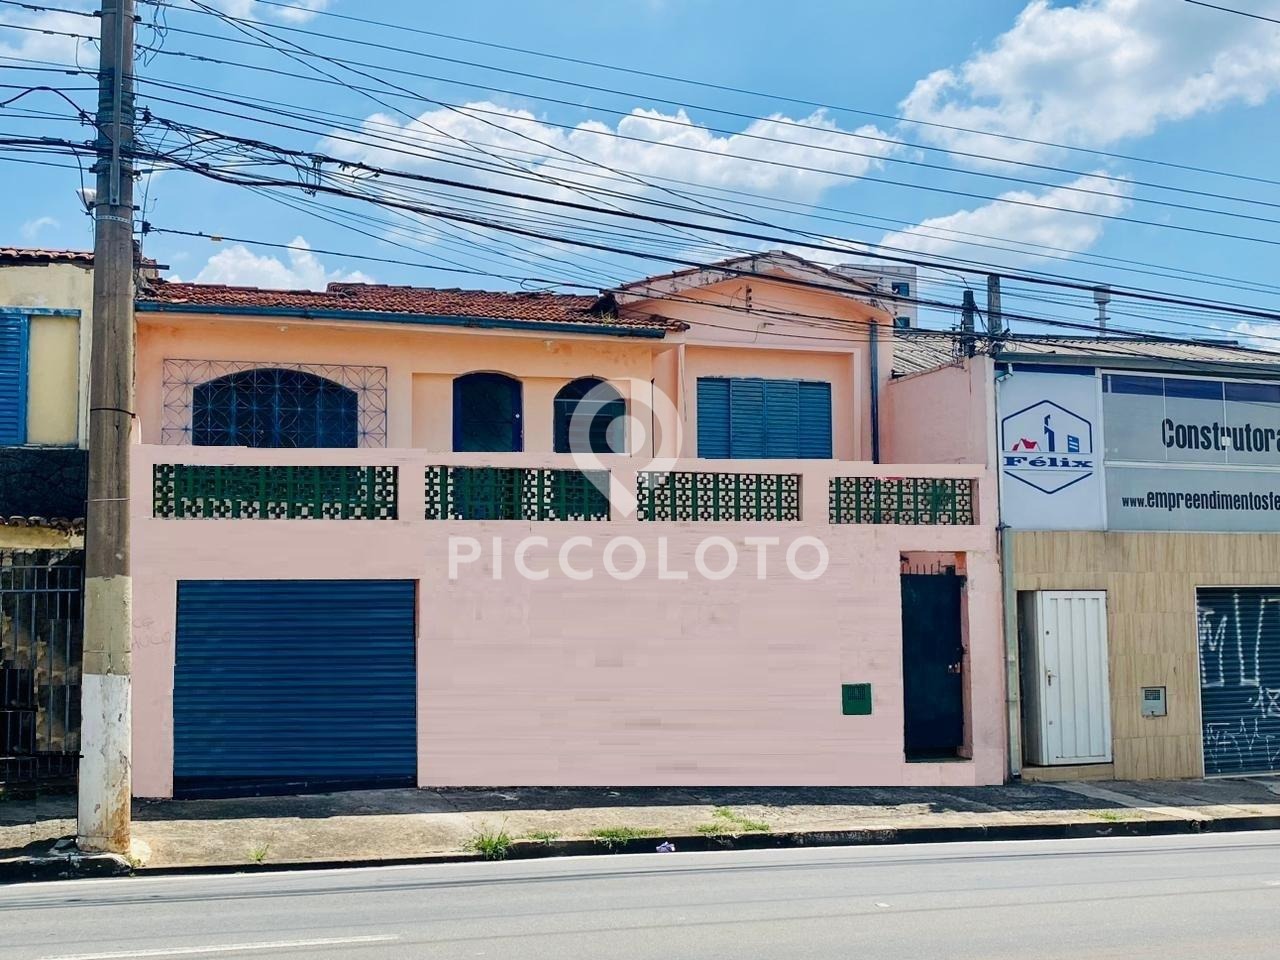 Piccoloto - Casa à venda no Parque Industrial em Campinas